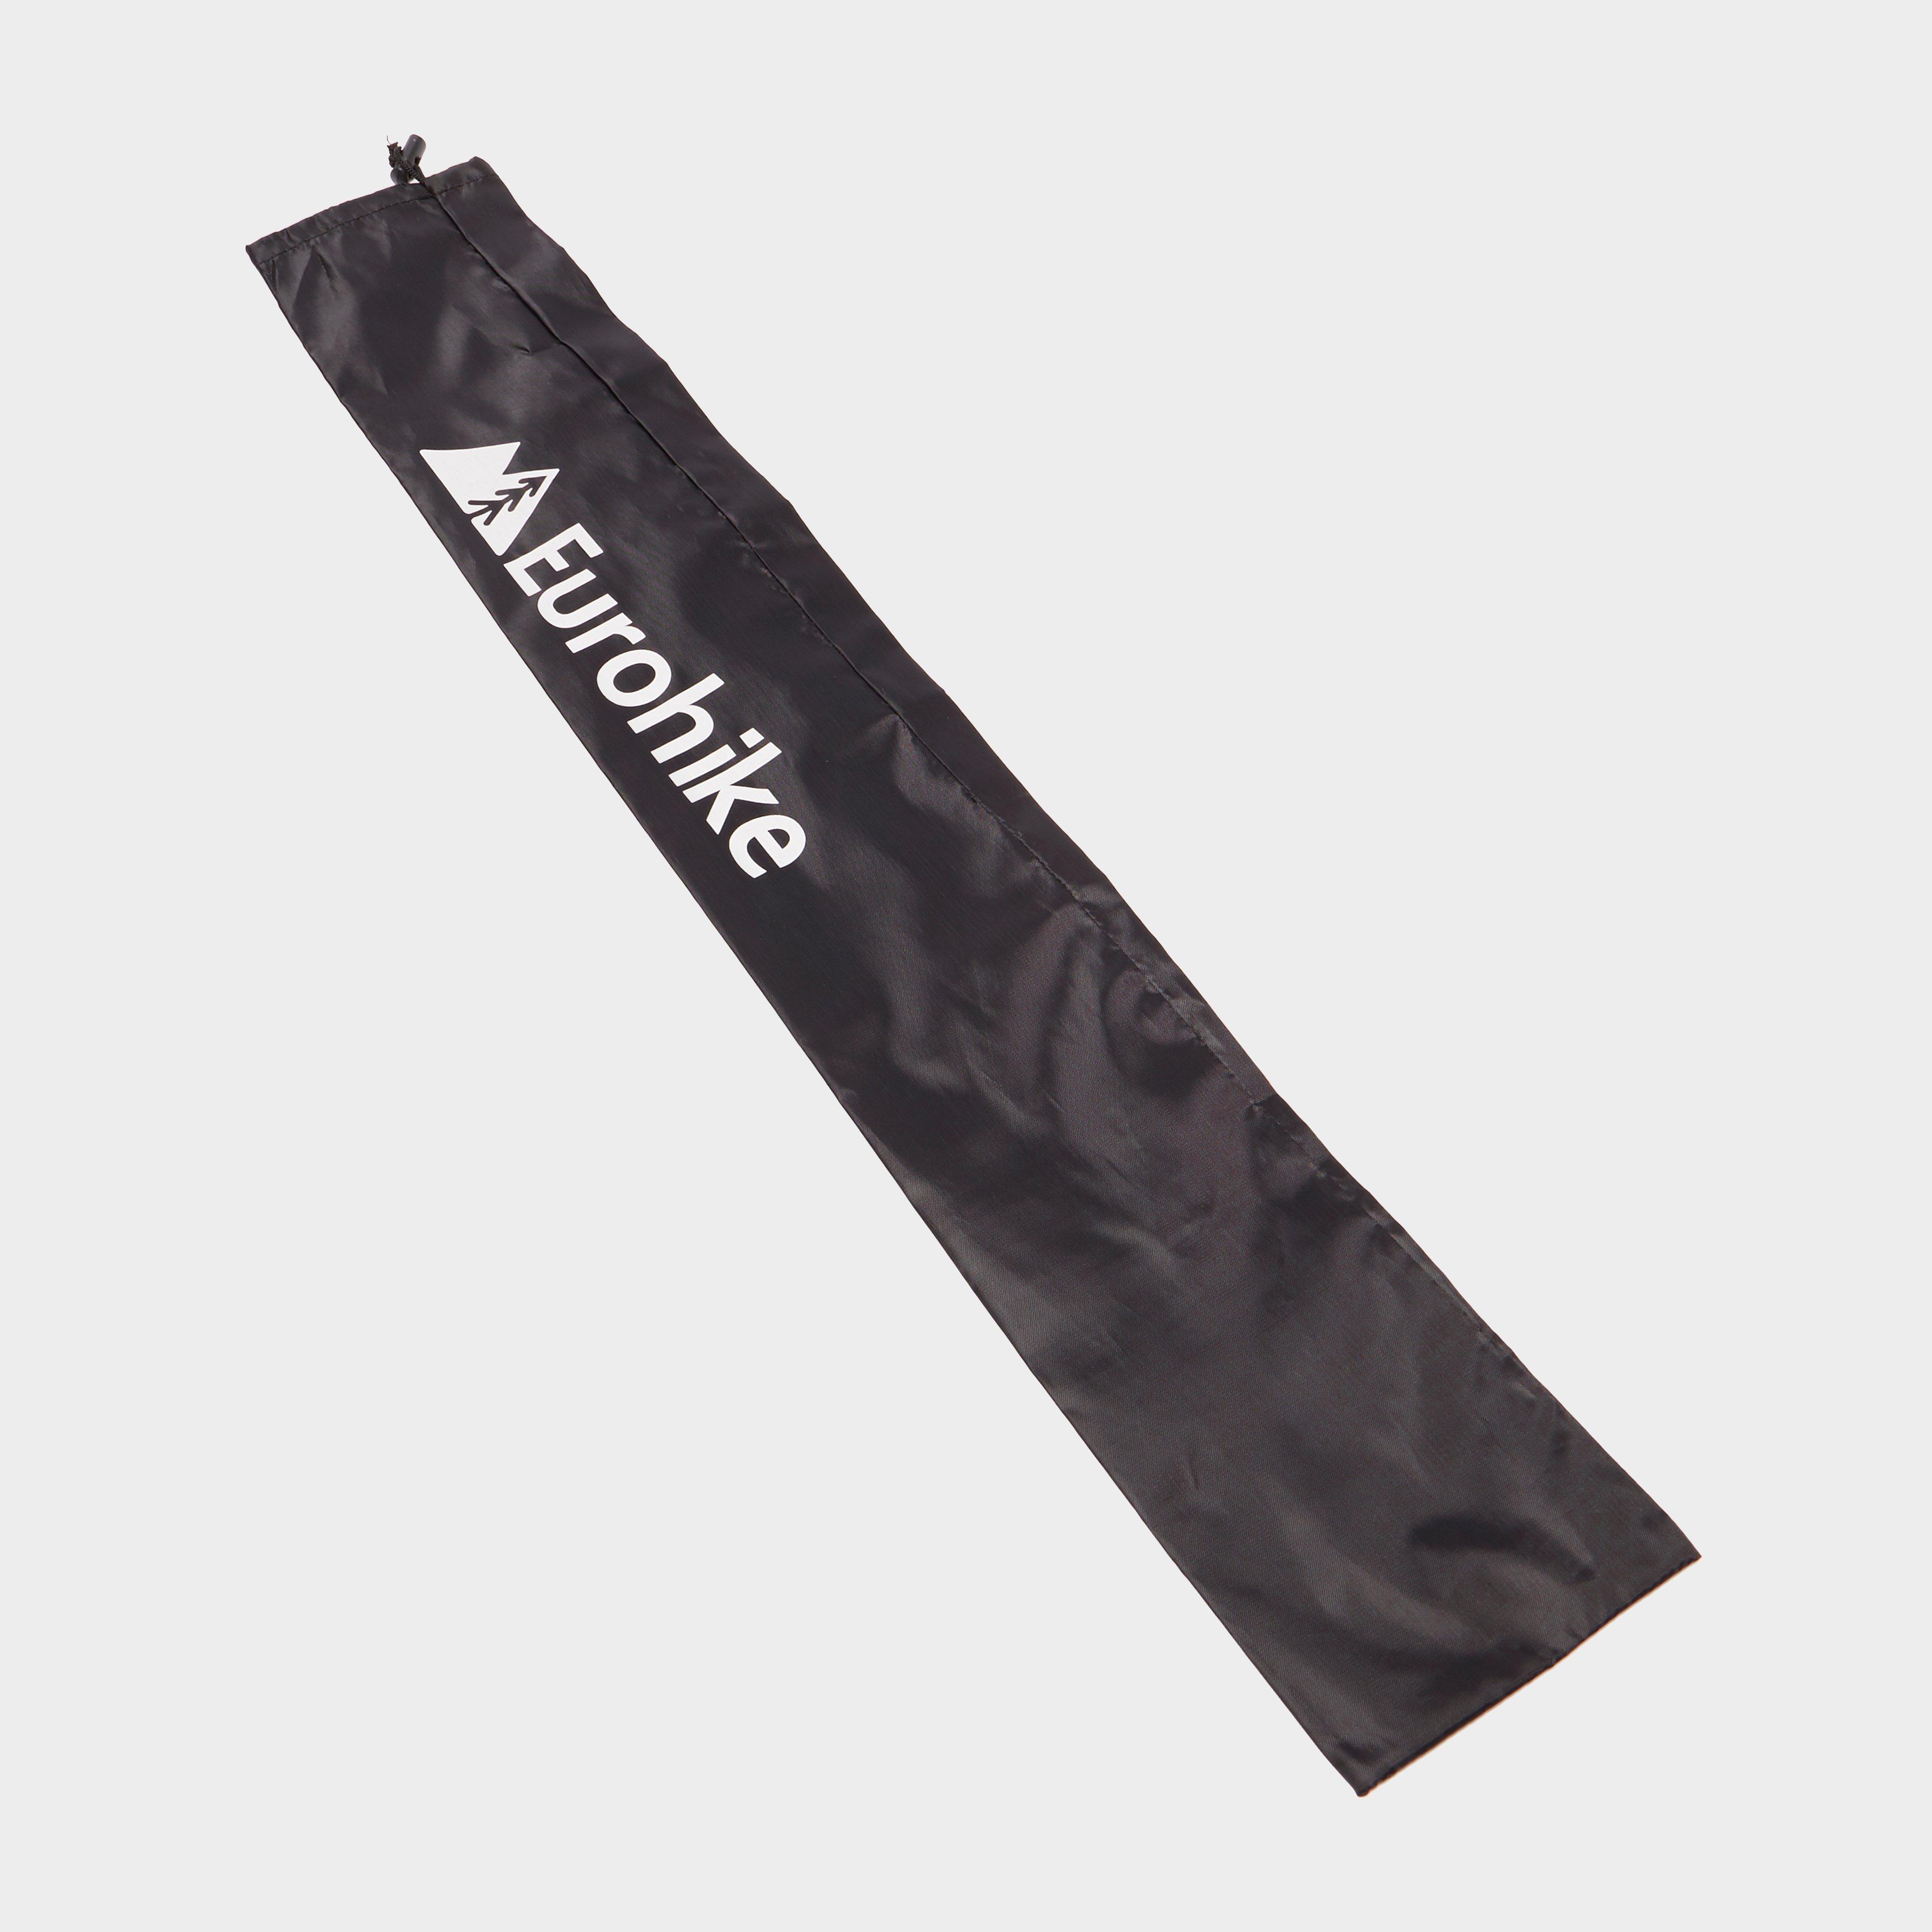 Image of Eurohike Walking Pole Accessory Kit - Black/Kit, Black/KIT